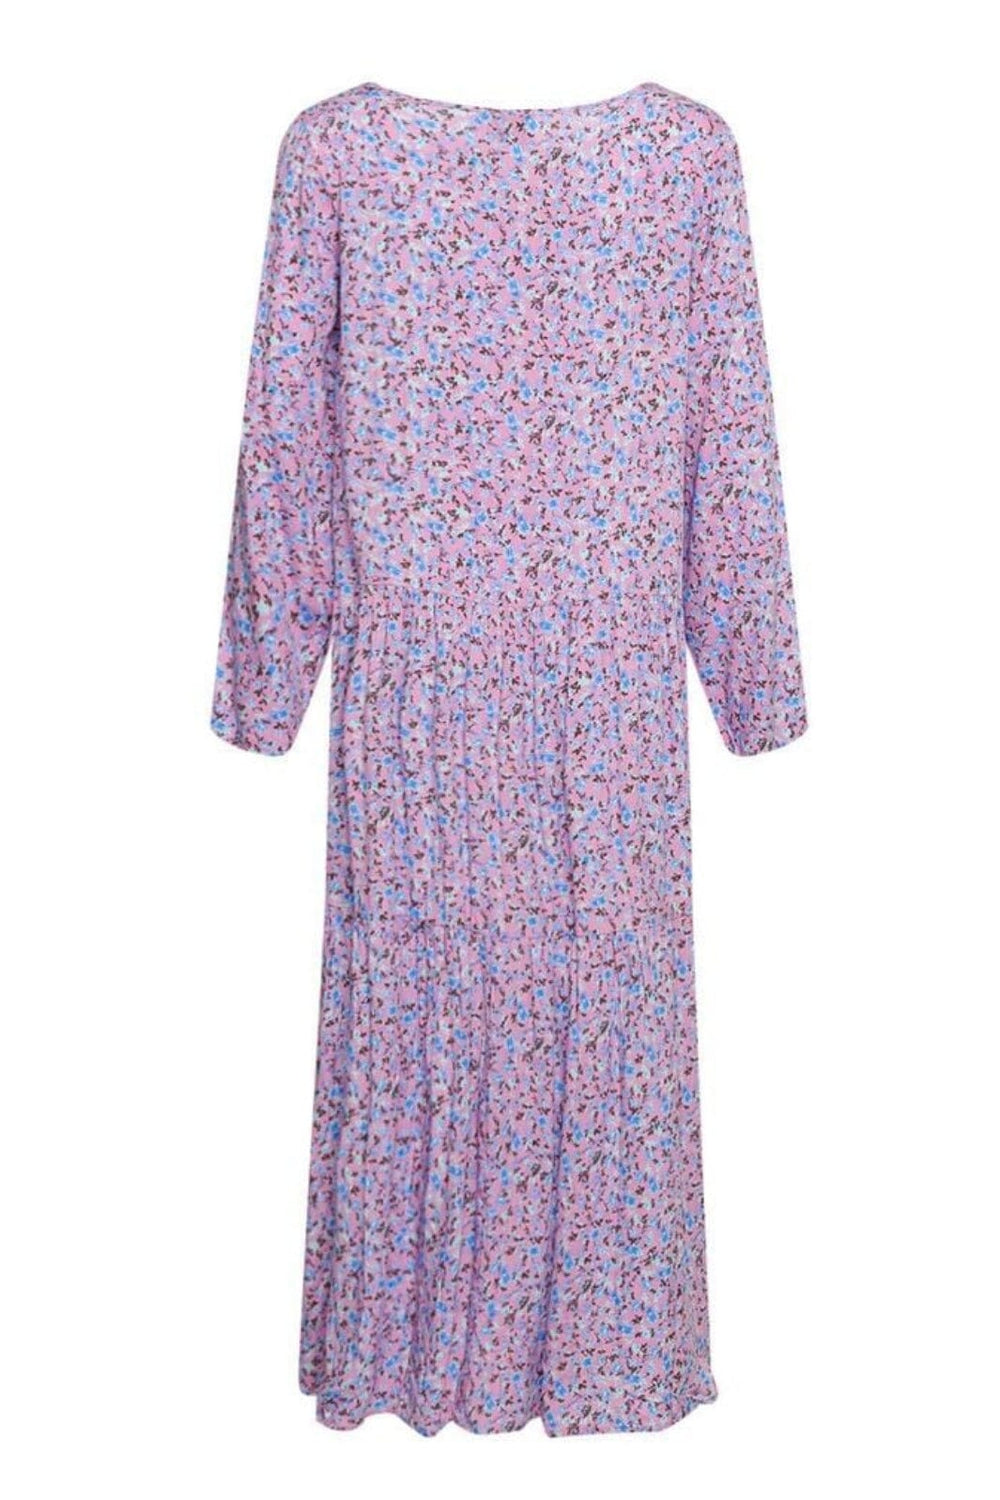 Noella - Imogen Long Dress - Pink/Blue Flower Kjoler 